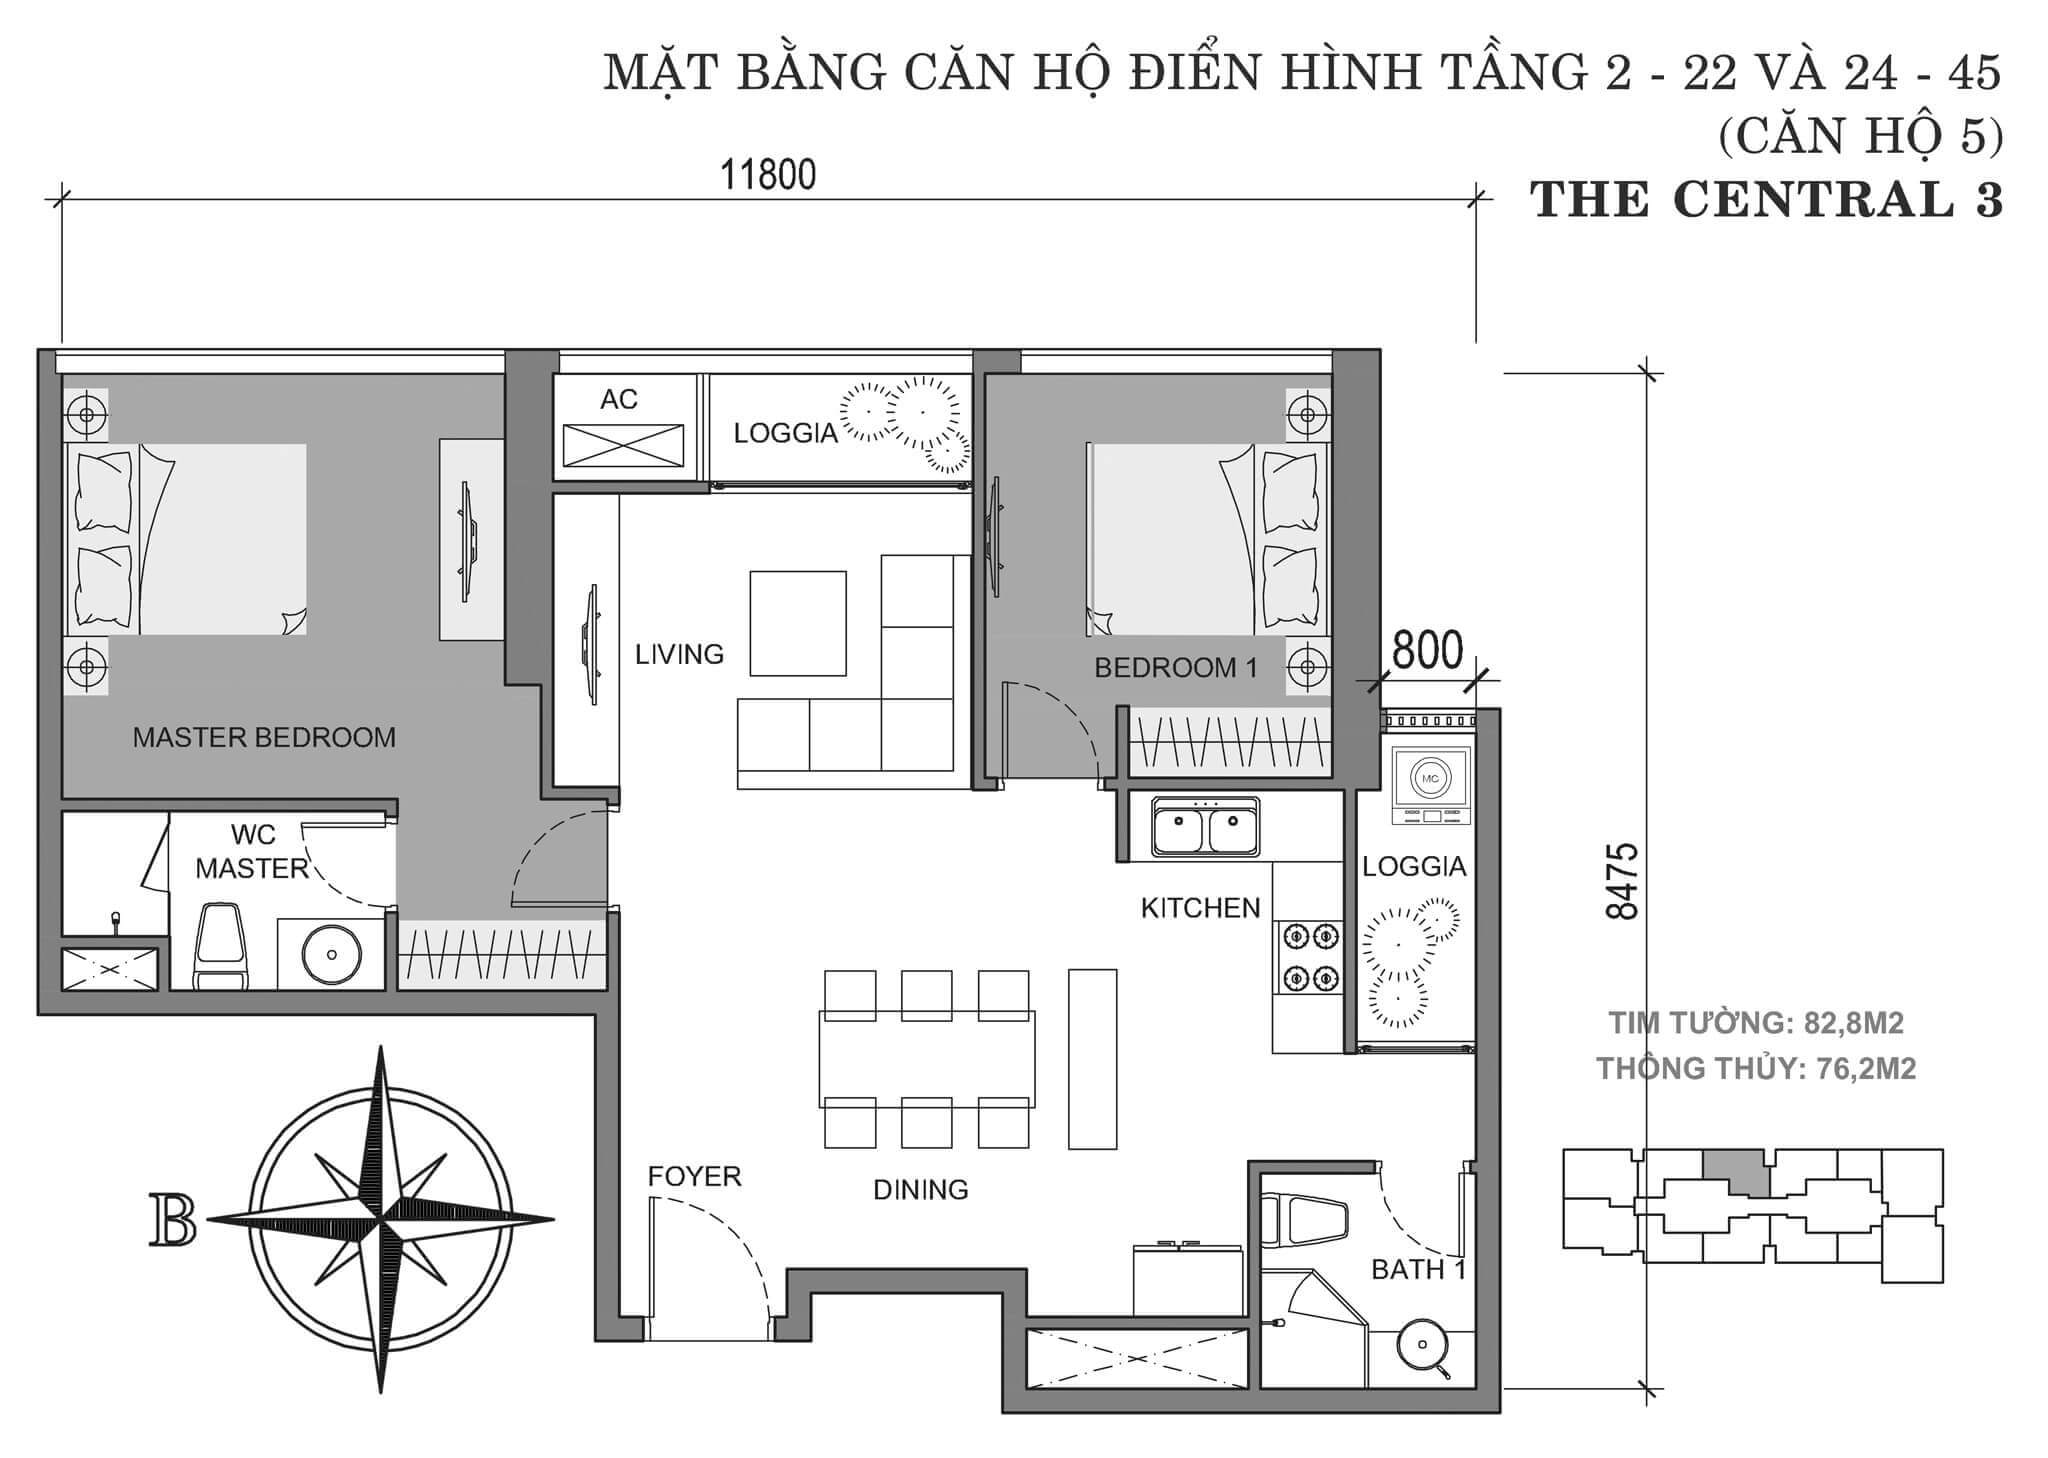 layout căn hộ số 5 tòa Central 3 tầng 2-45  